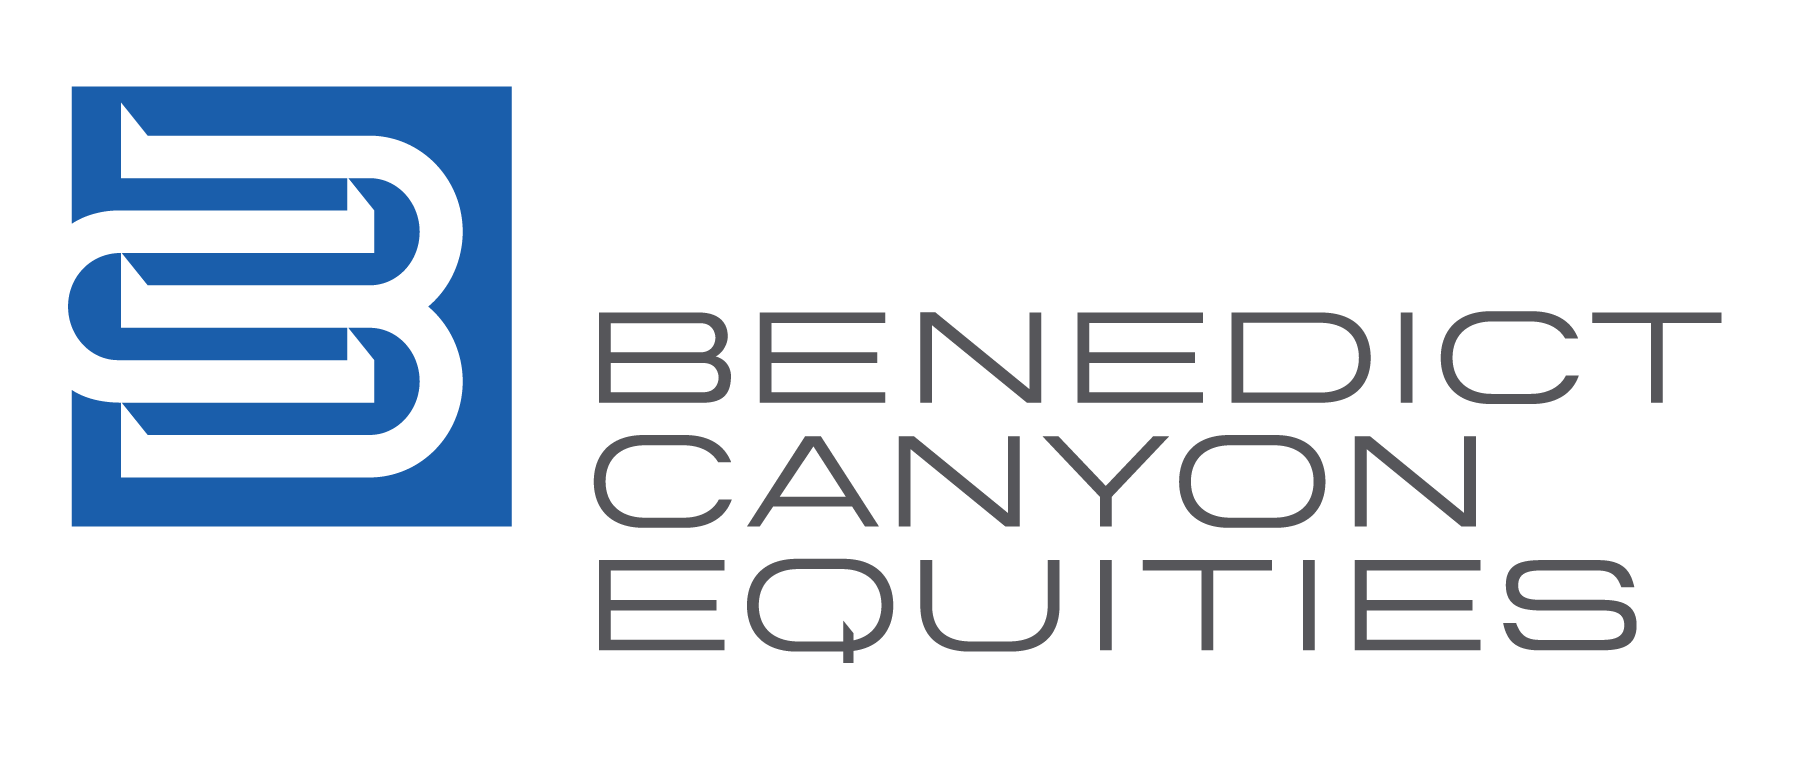 Benedict Canyon Equities